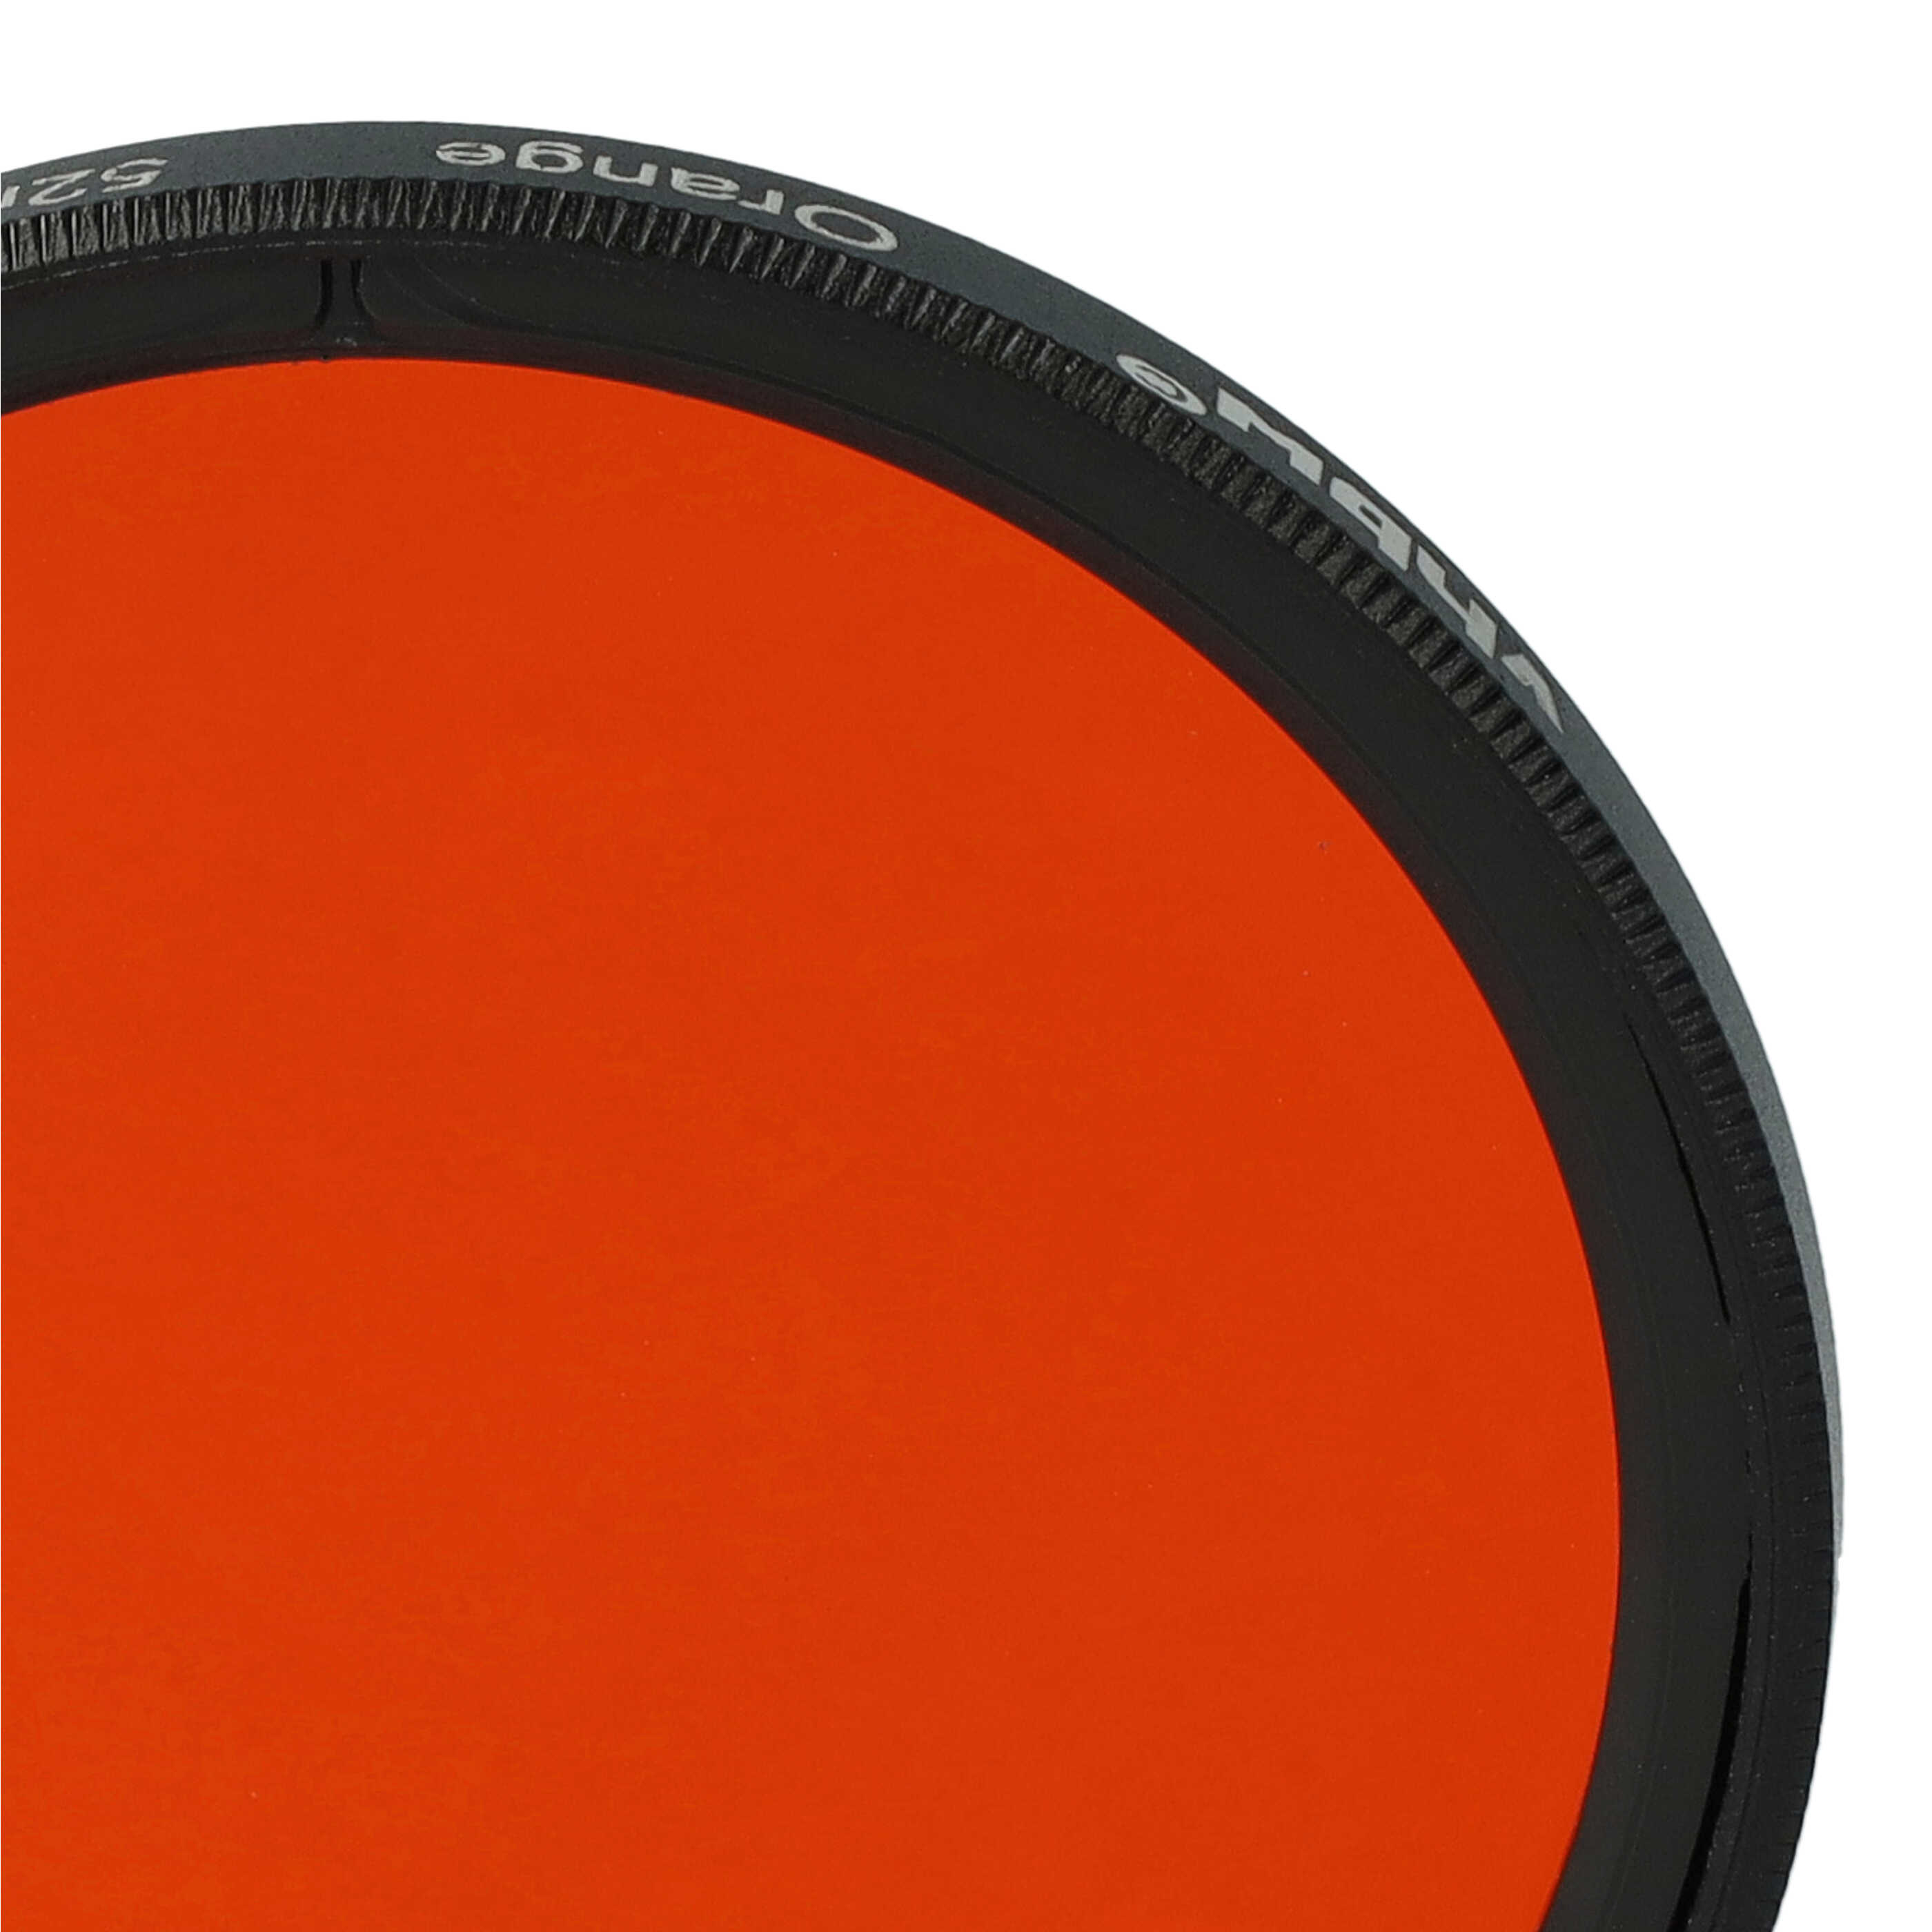 Filtr fotograficzny na obiektywy z gwintem 52 mm - filtr pomarańczowy